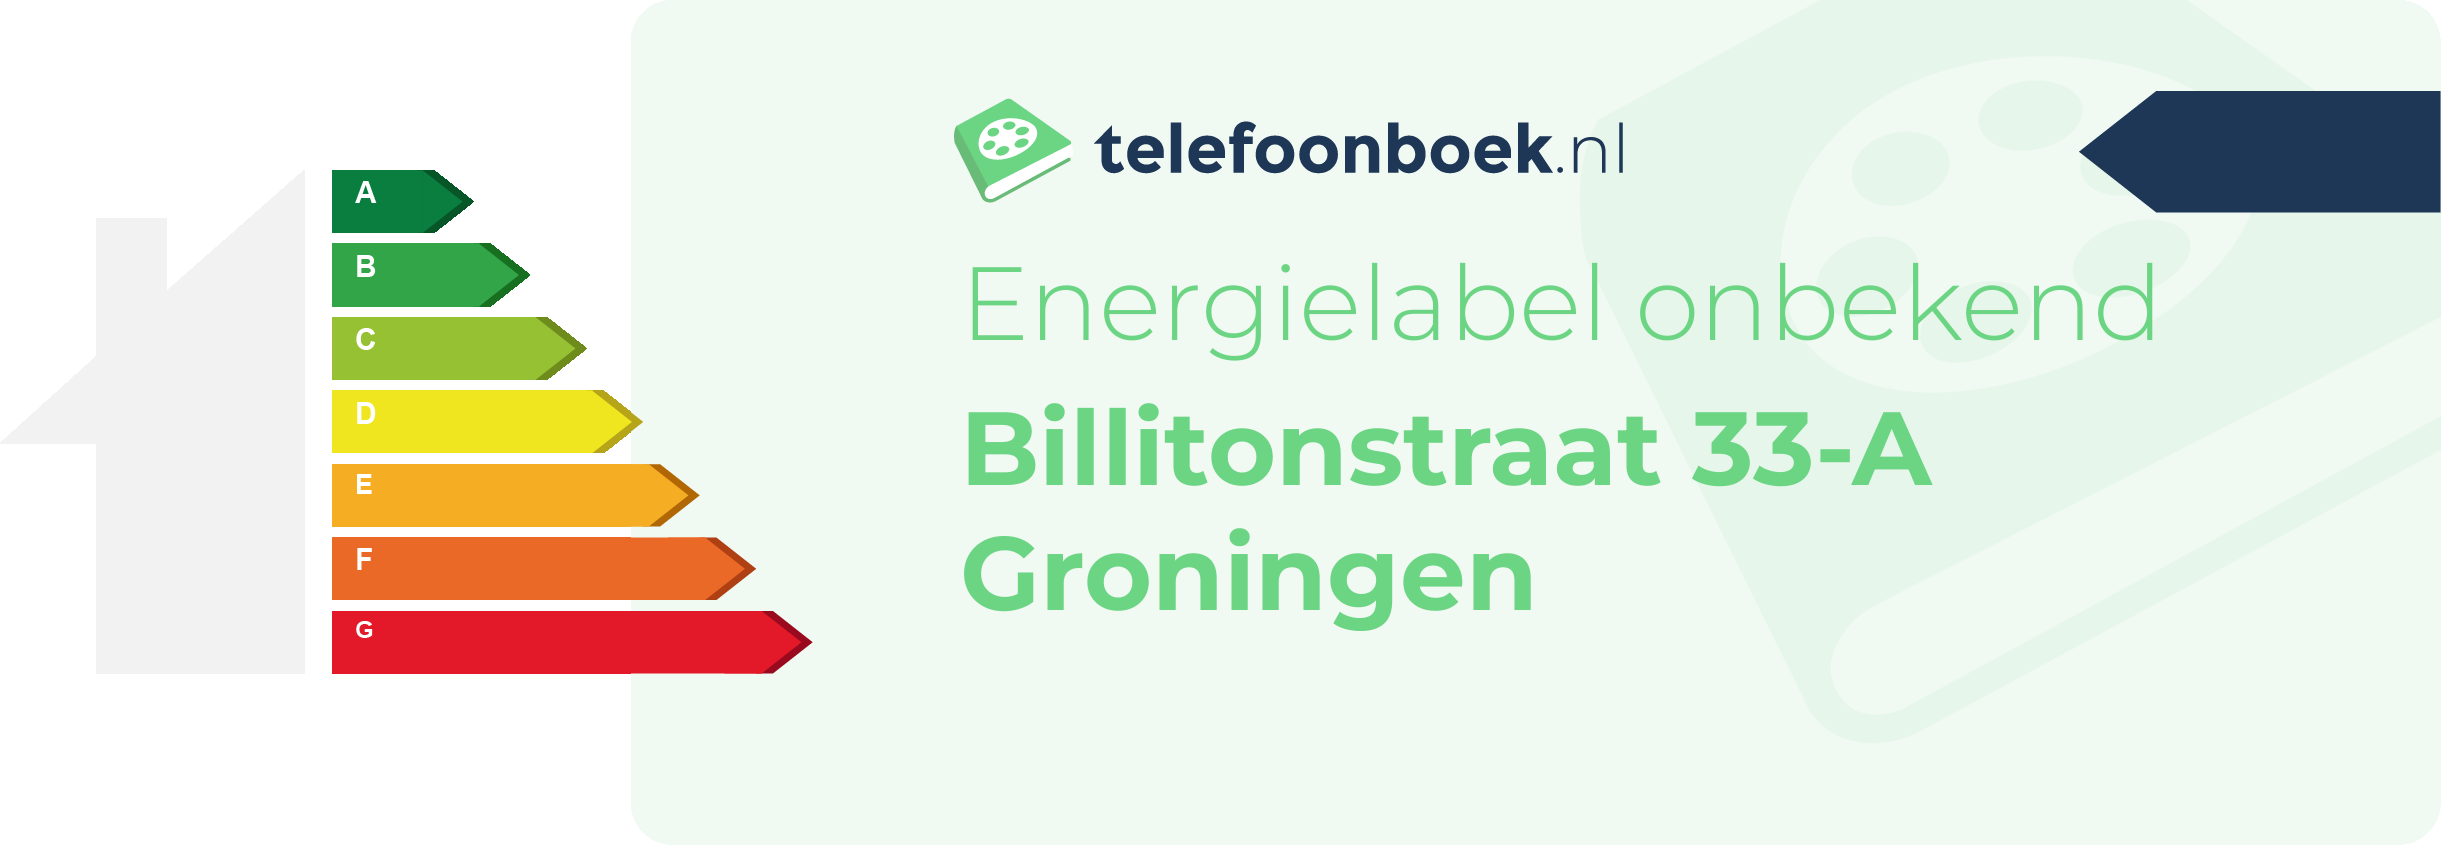 Energielabel Billitonstraat 33-A Groningen